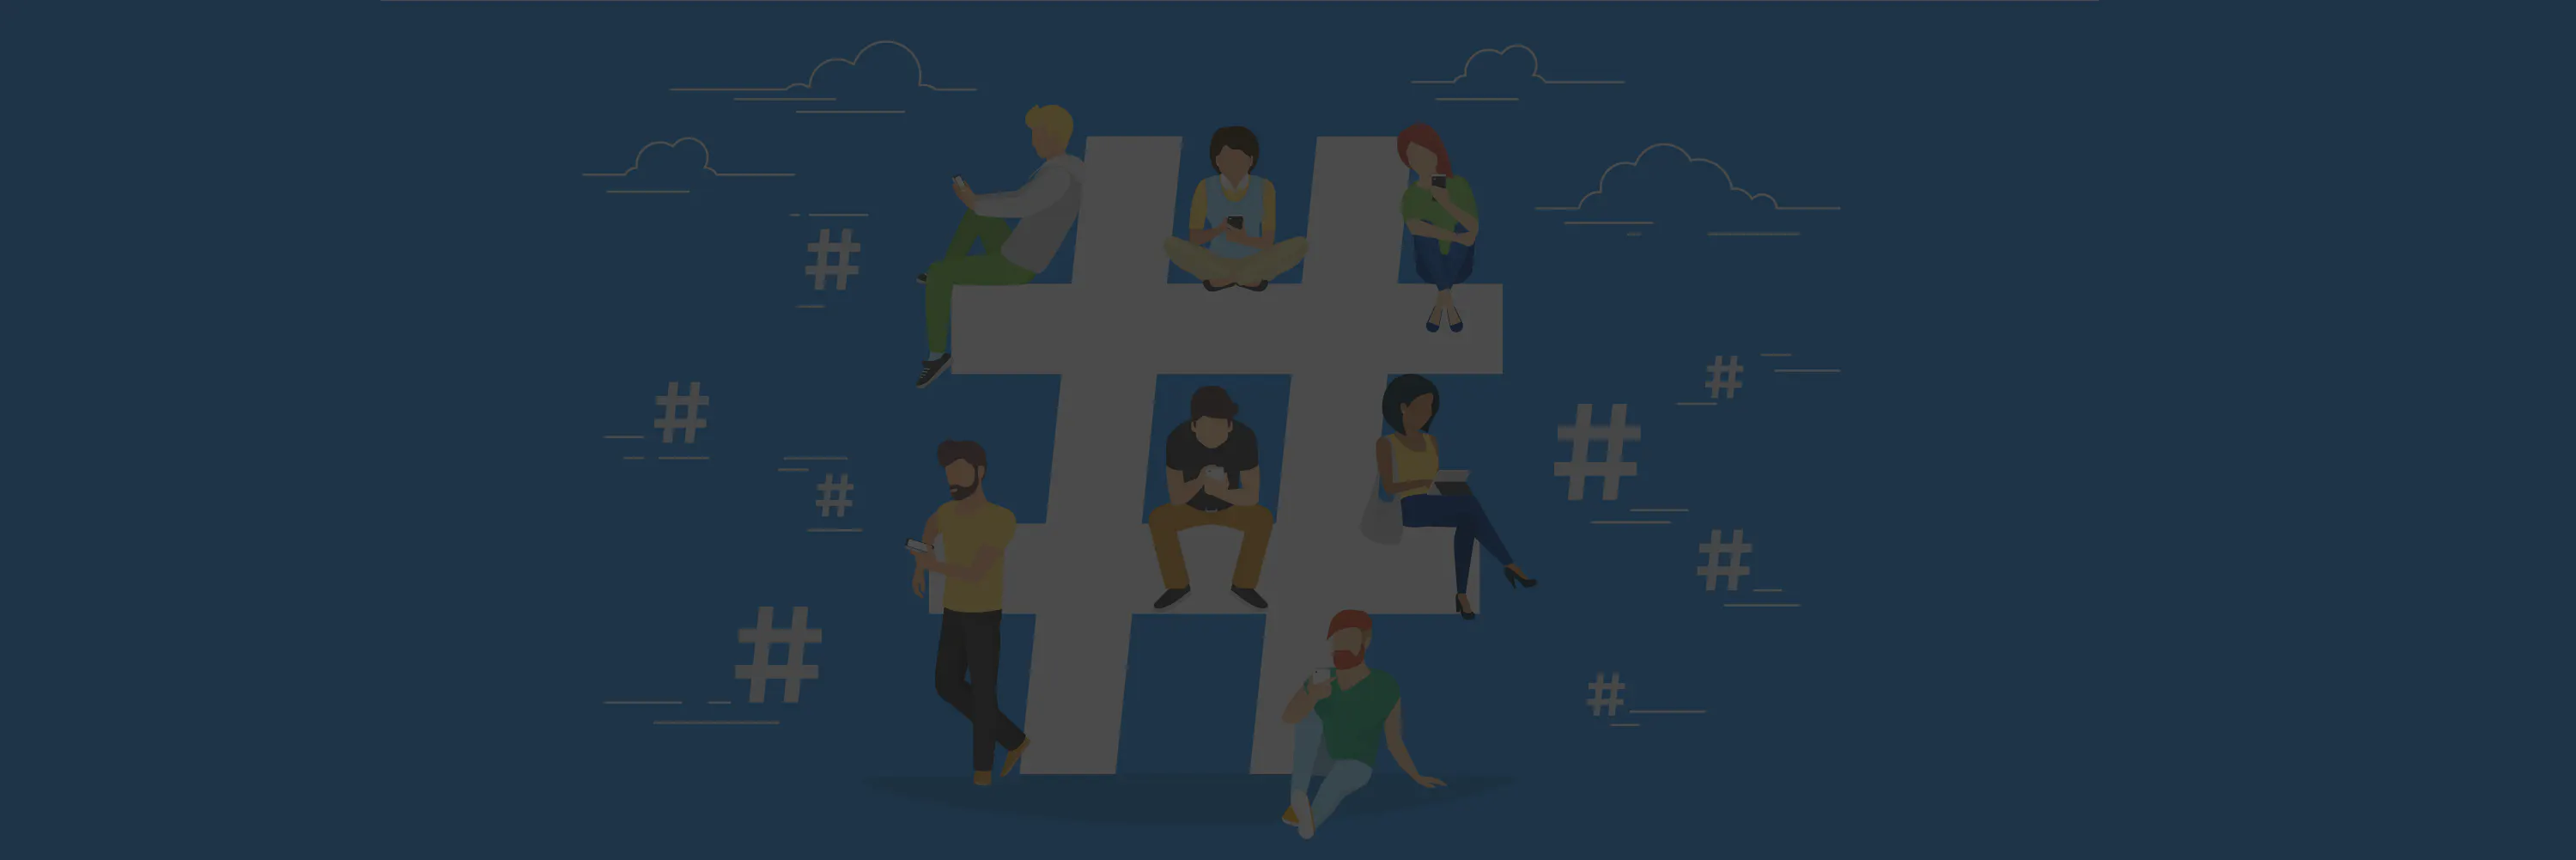 Le Guide du marketing de Twitter hashtags tendance